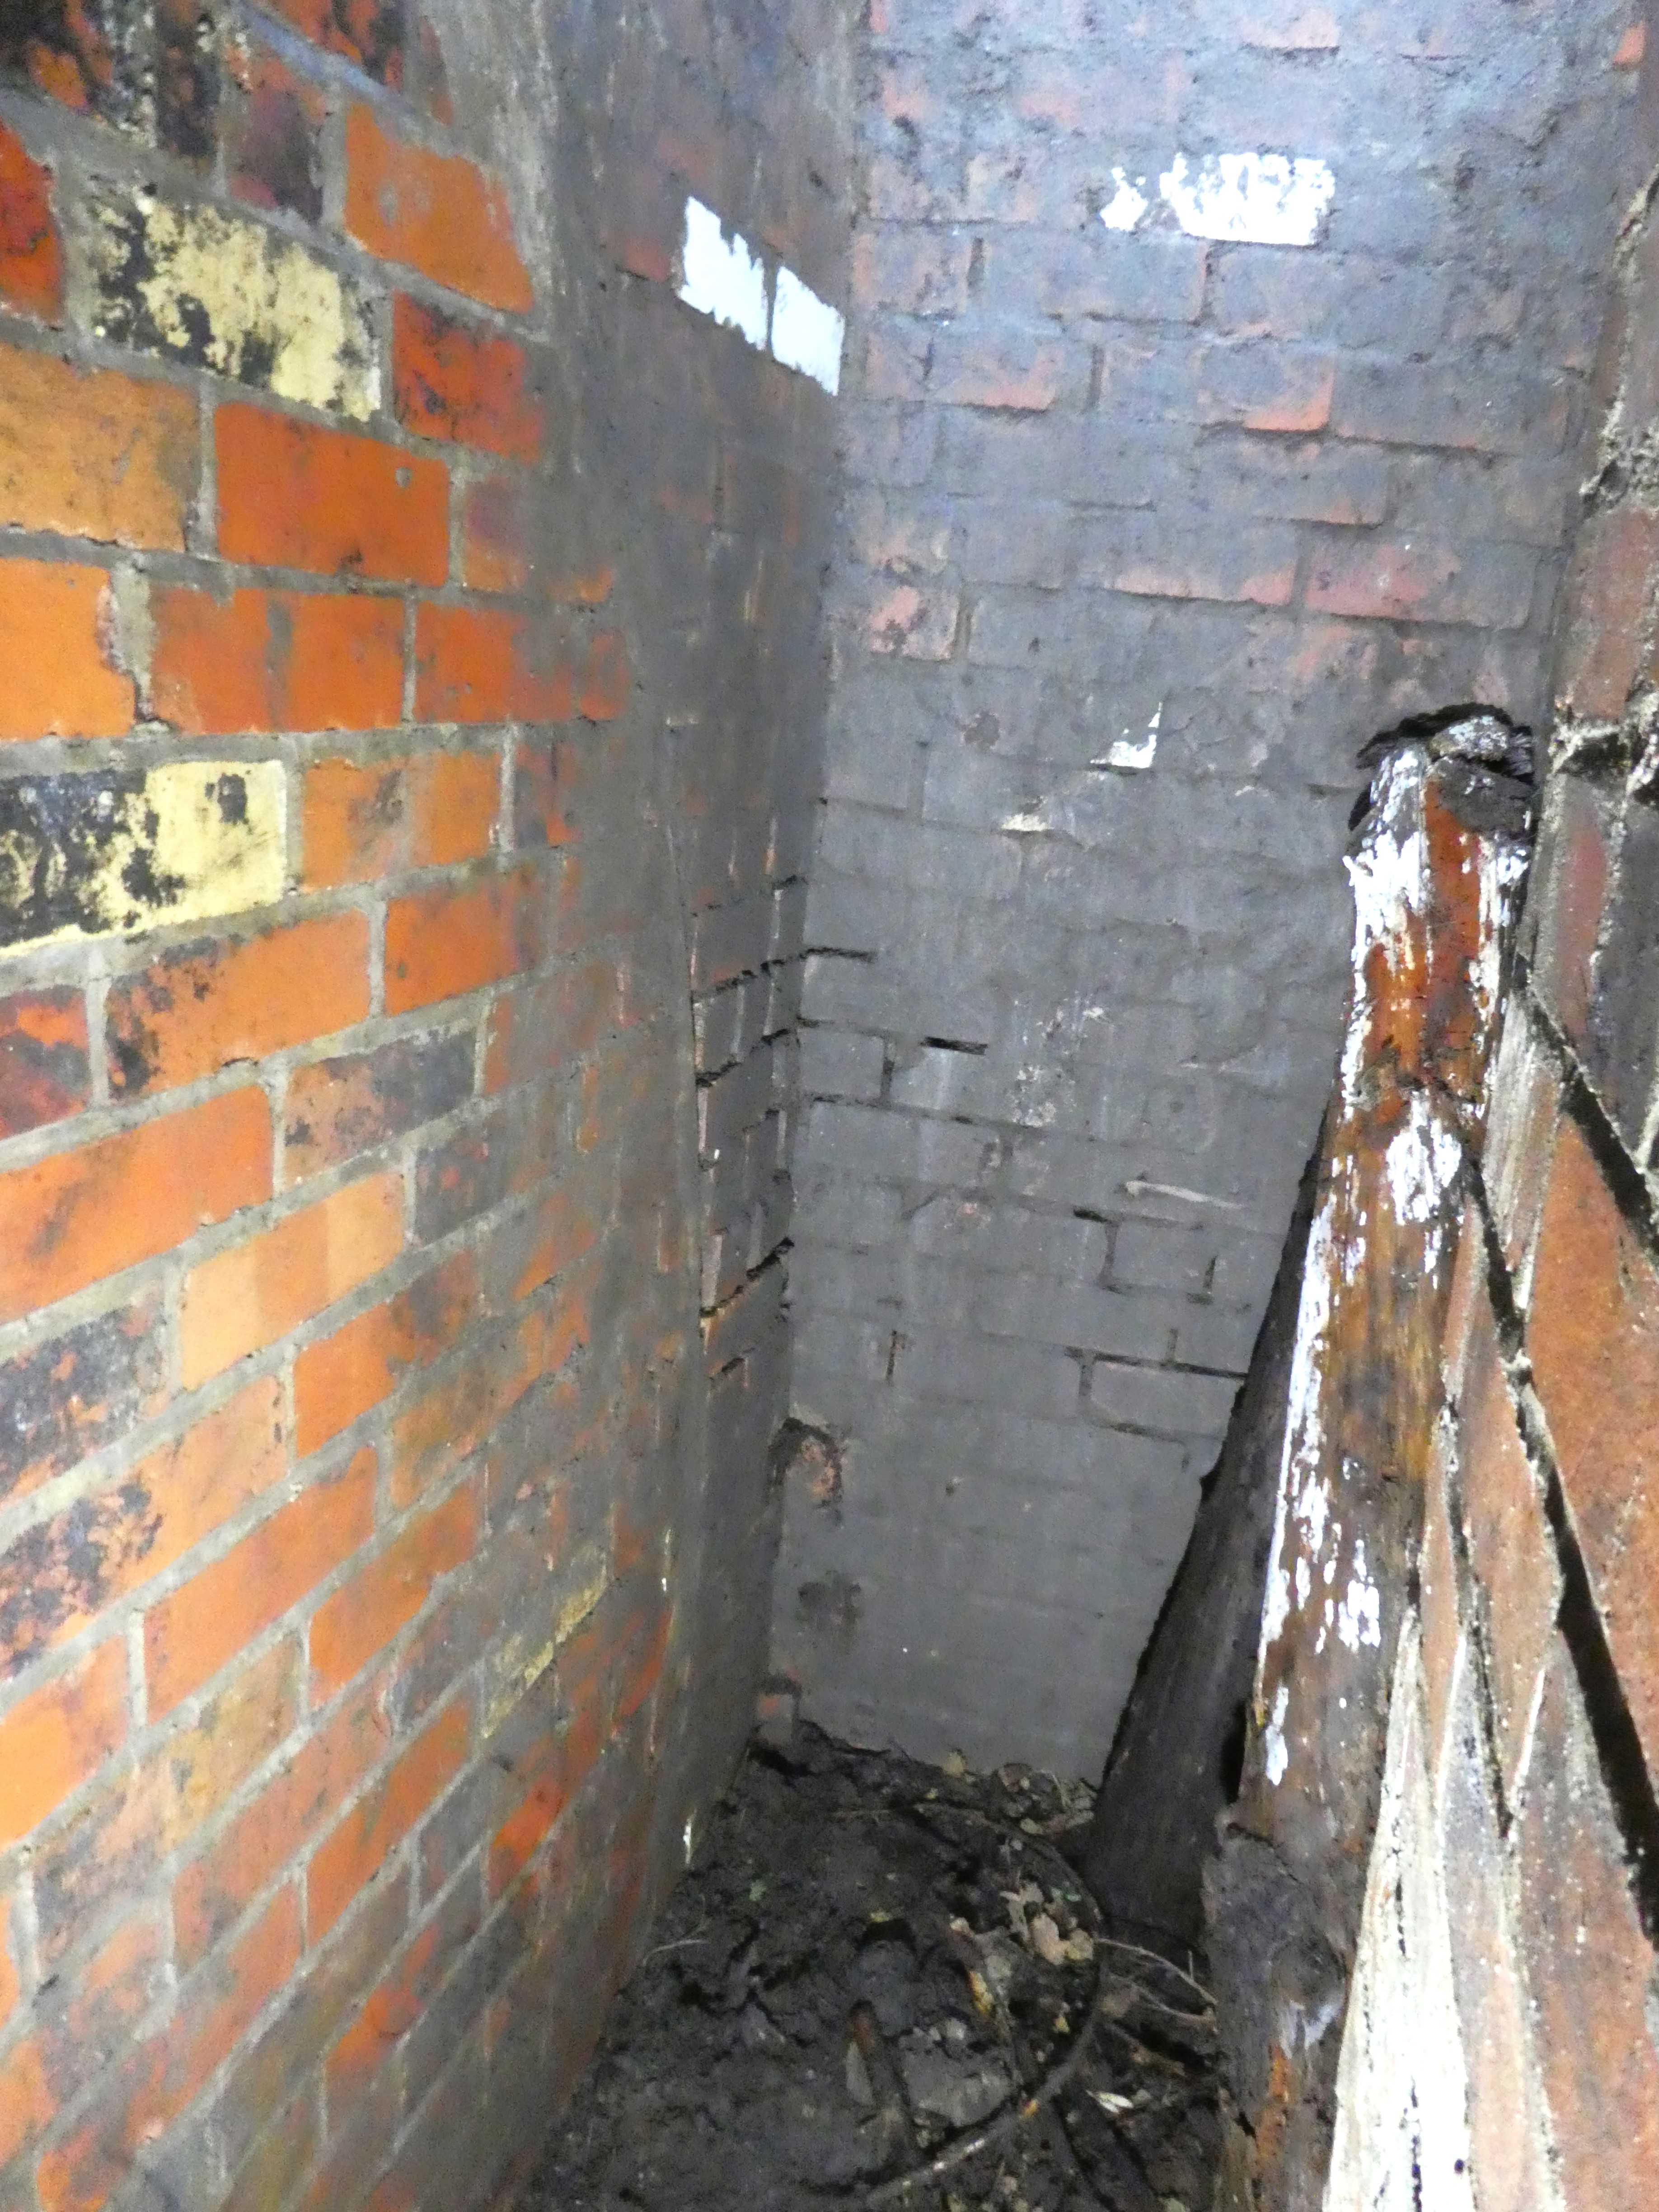 Marksbury OB entrance shaft - note white glazed bricks